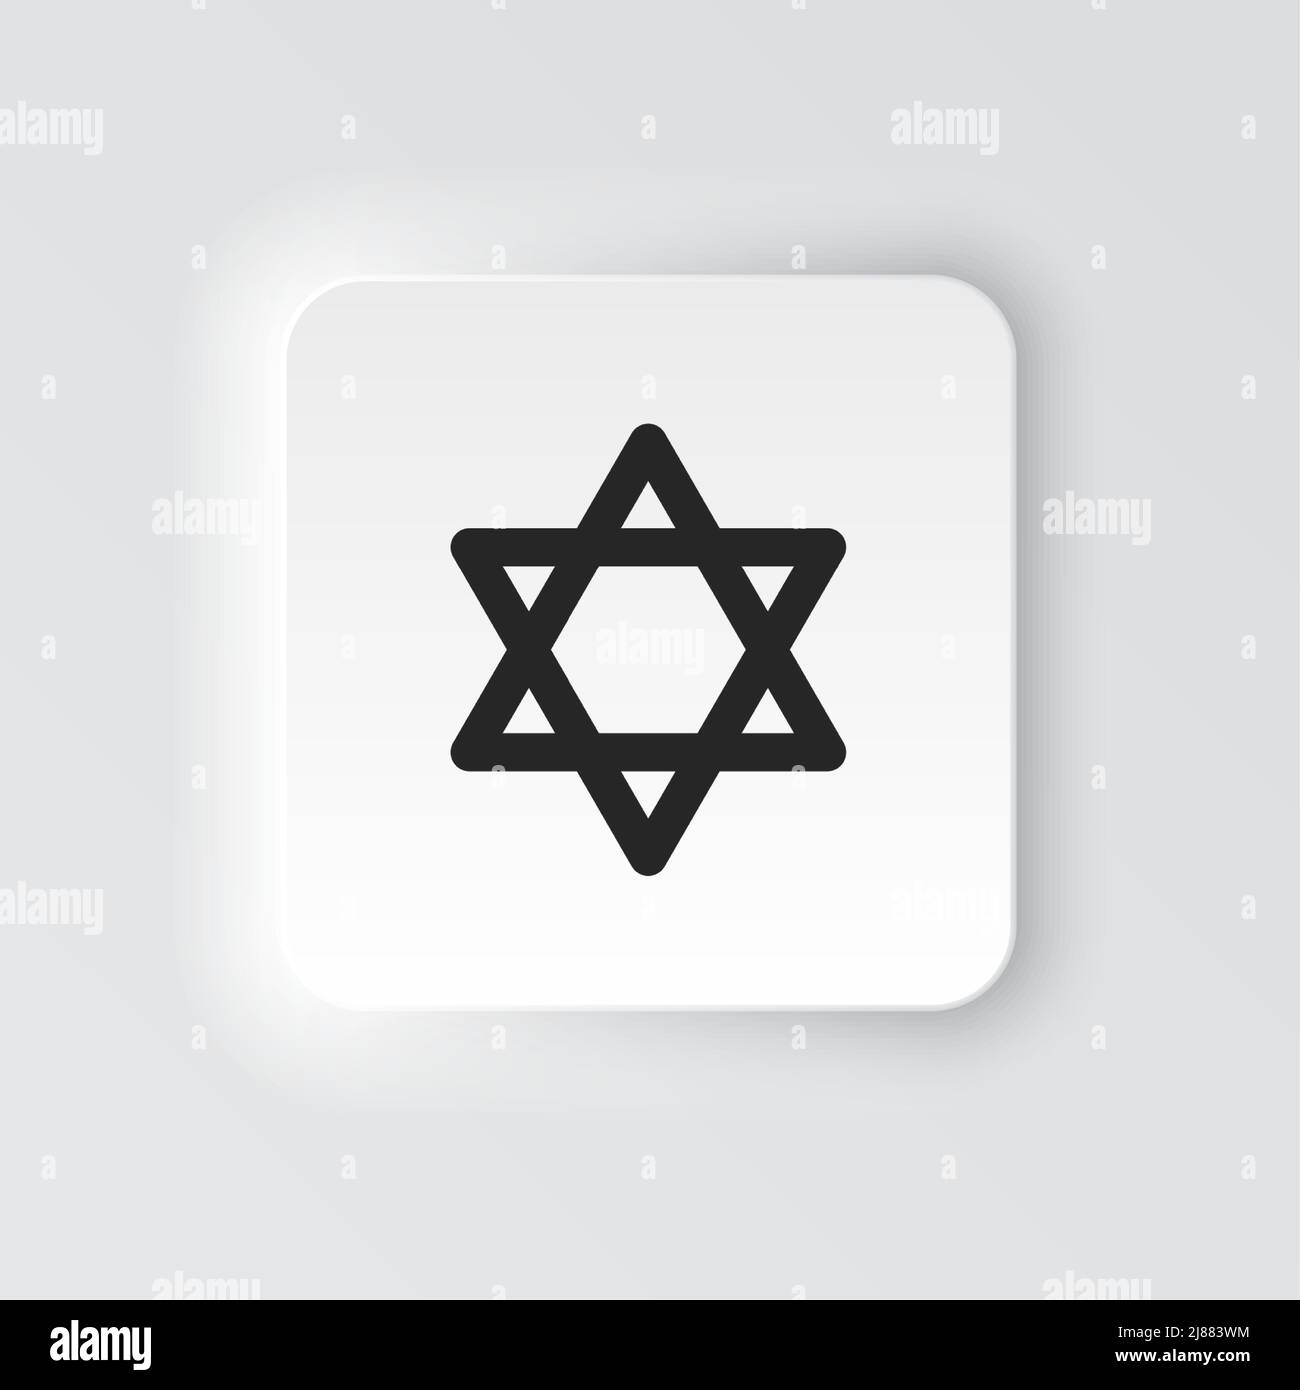 Rectangle icône bouton étoile Israël de david. Bandeau de boutons interface de badge rectangulaire pour l'illustration d'application sur le style néomorphe sur fond blanc Illustration de Vecteur